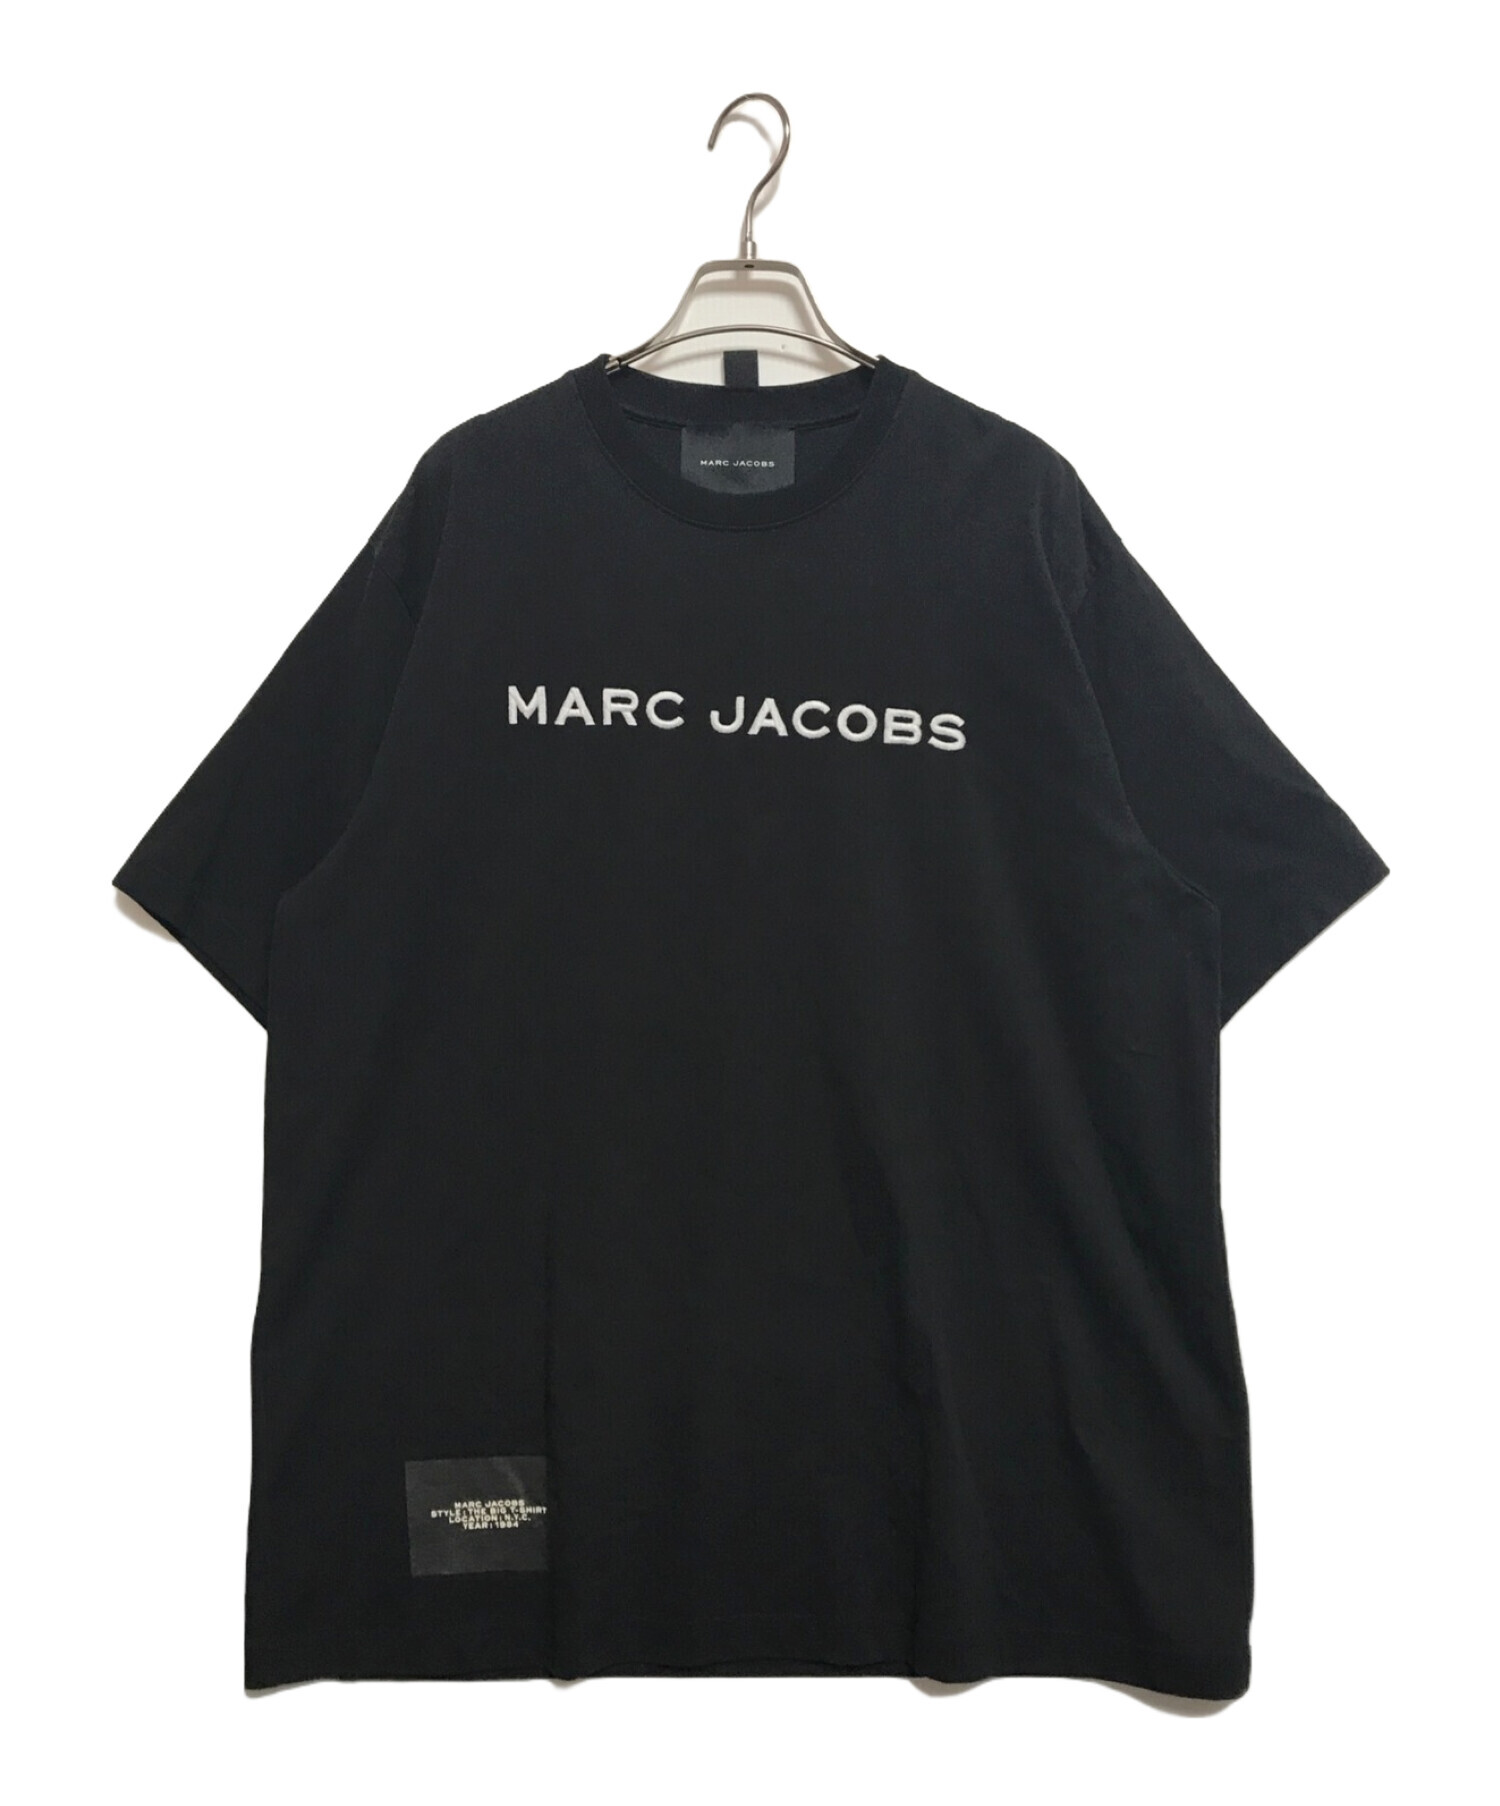 MARC JACOBS (マーク ジェイコブス) The Big T-Shirt ブラック サイズ:S